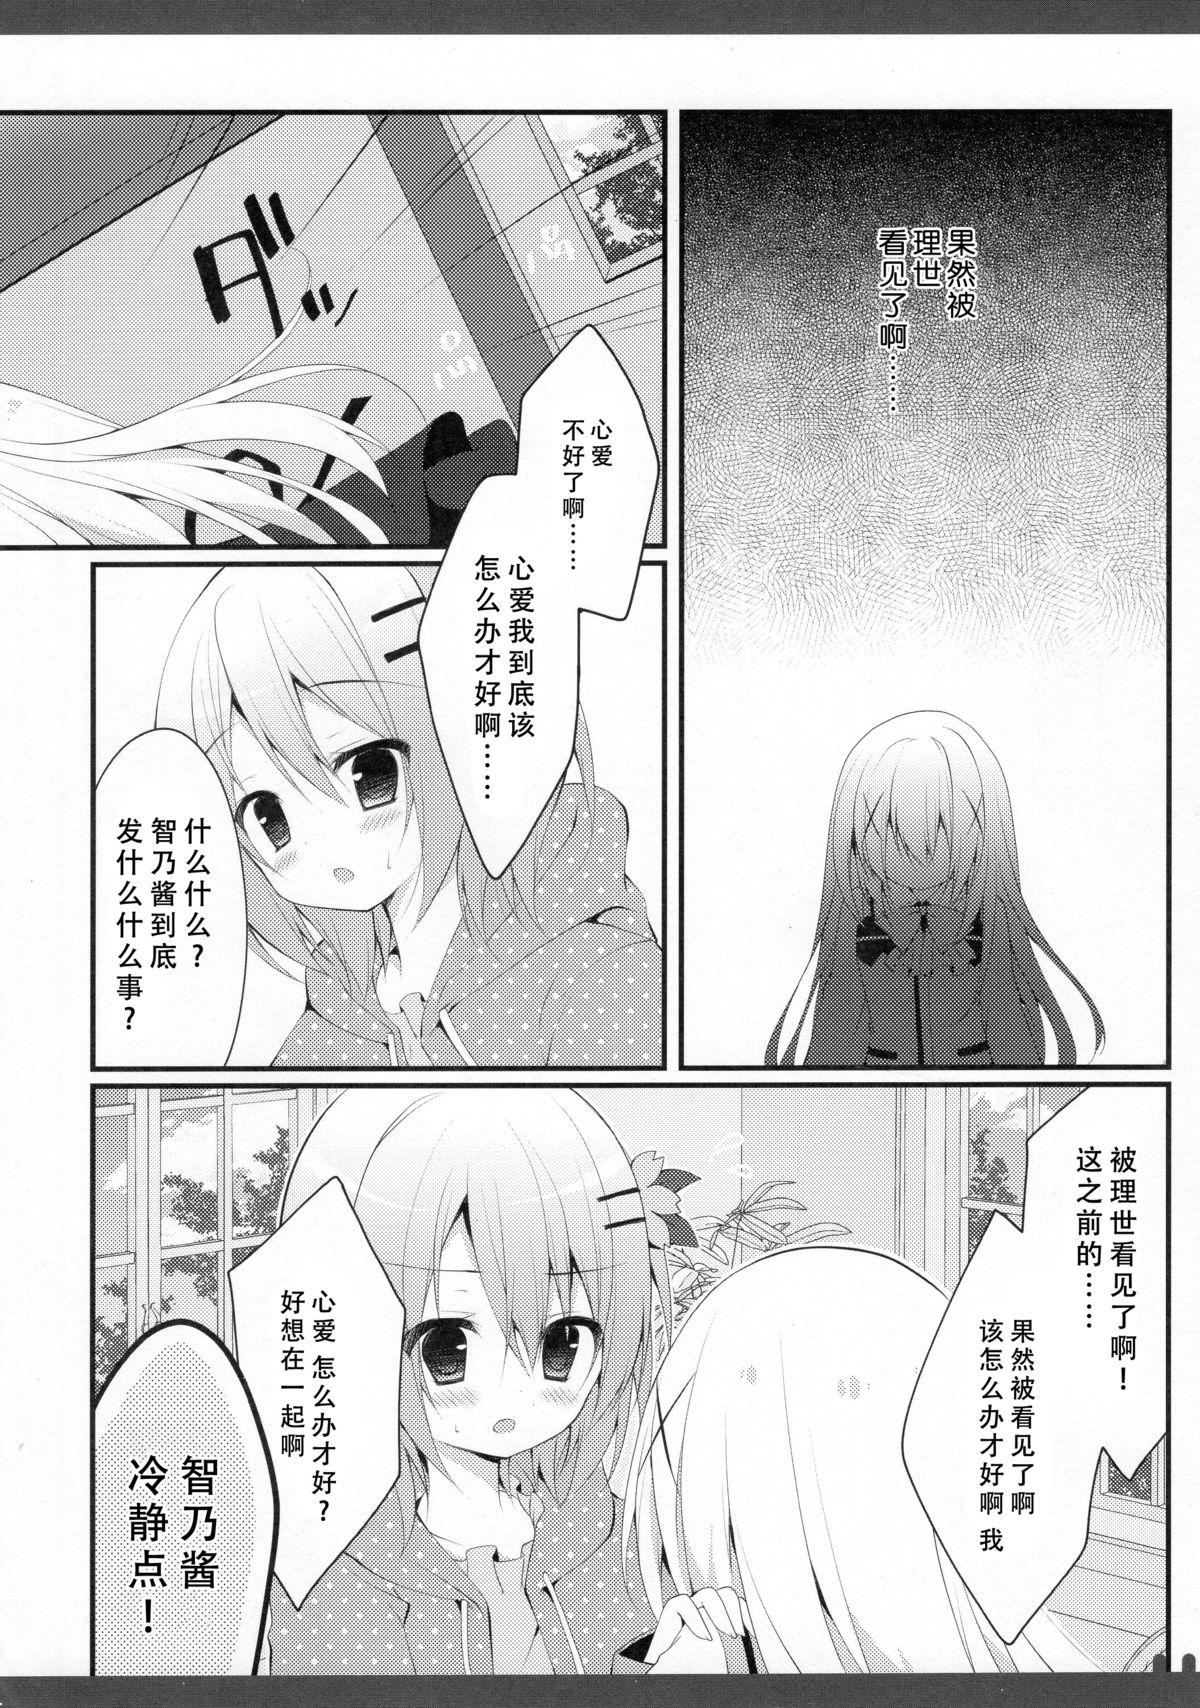 Pussy Licking Futari no Himitsu 3 - Gochuumon wa usagi desu ka Dirty Talk - Page 6